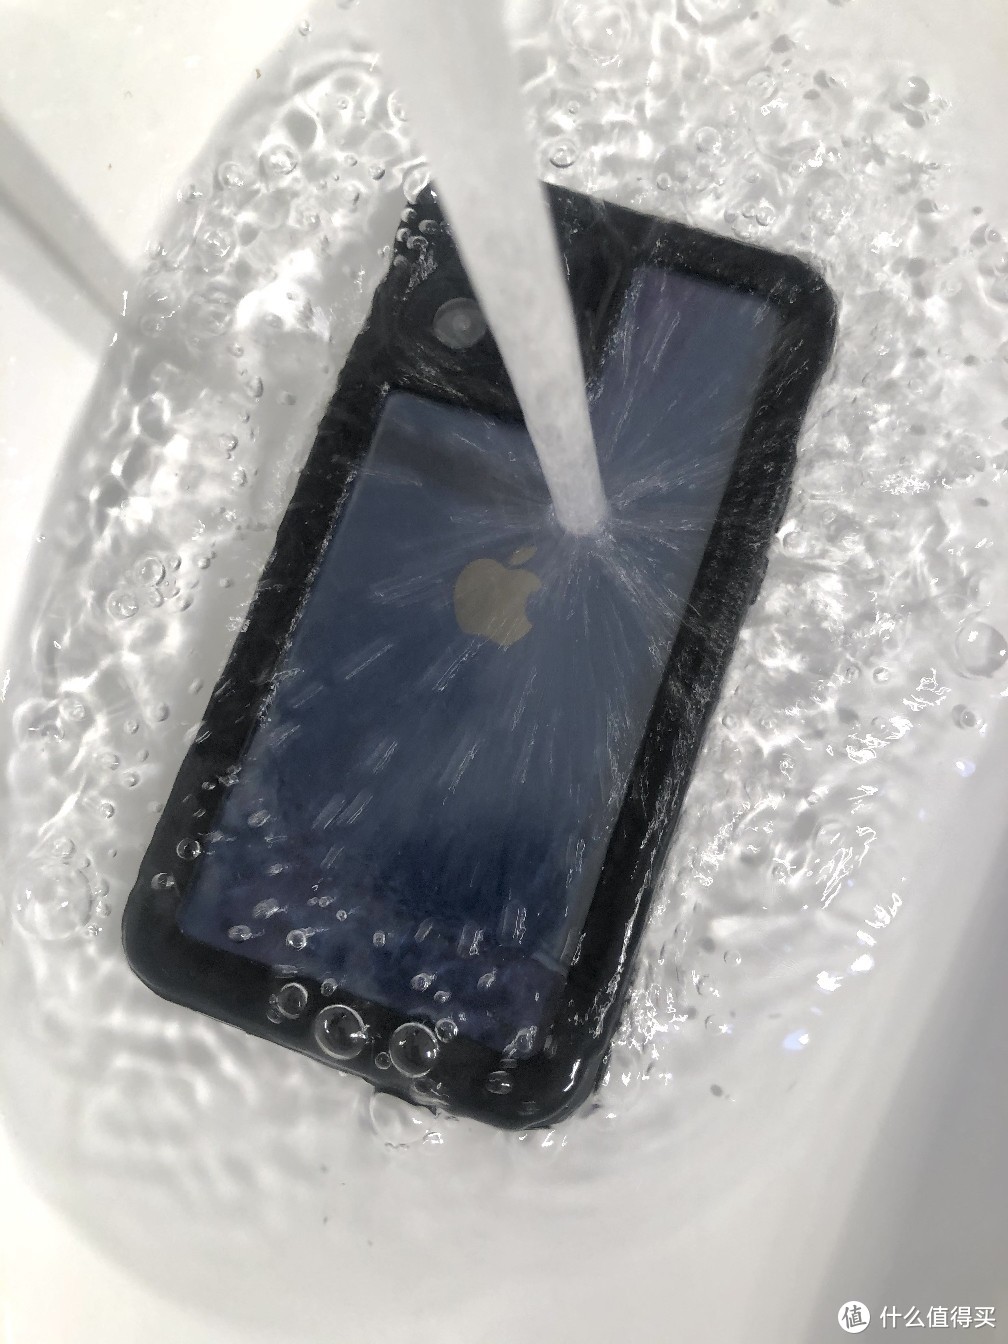 洗澡看剧神器”苹果12防水手机壳喜欢洗澡玩手机的朋友一定不要错过它